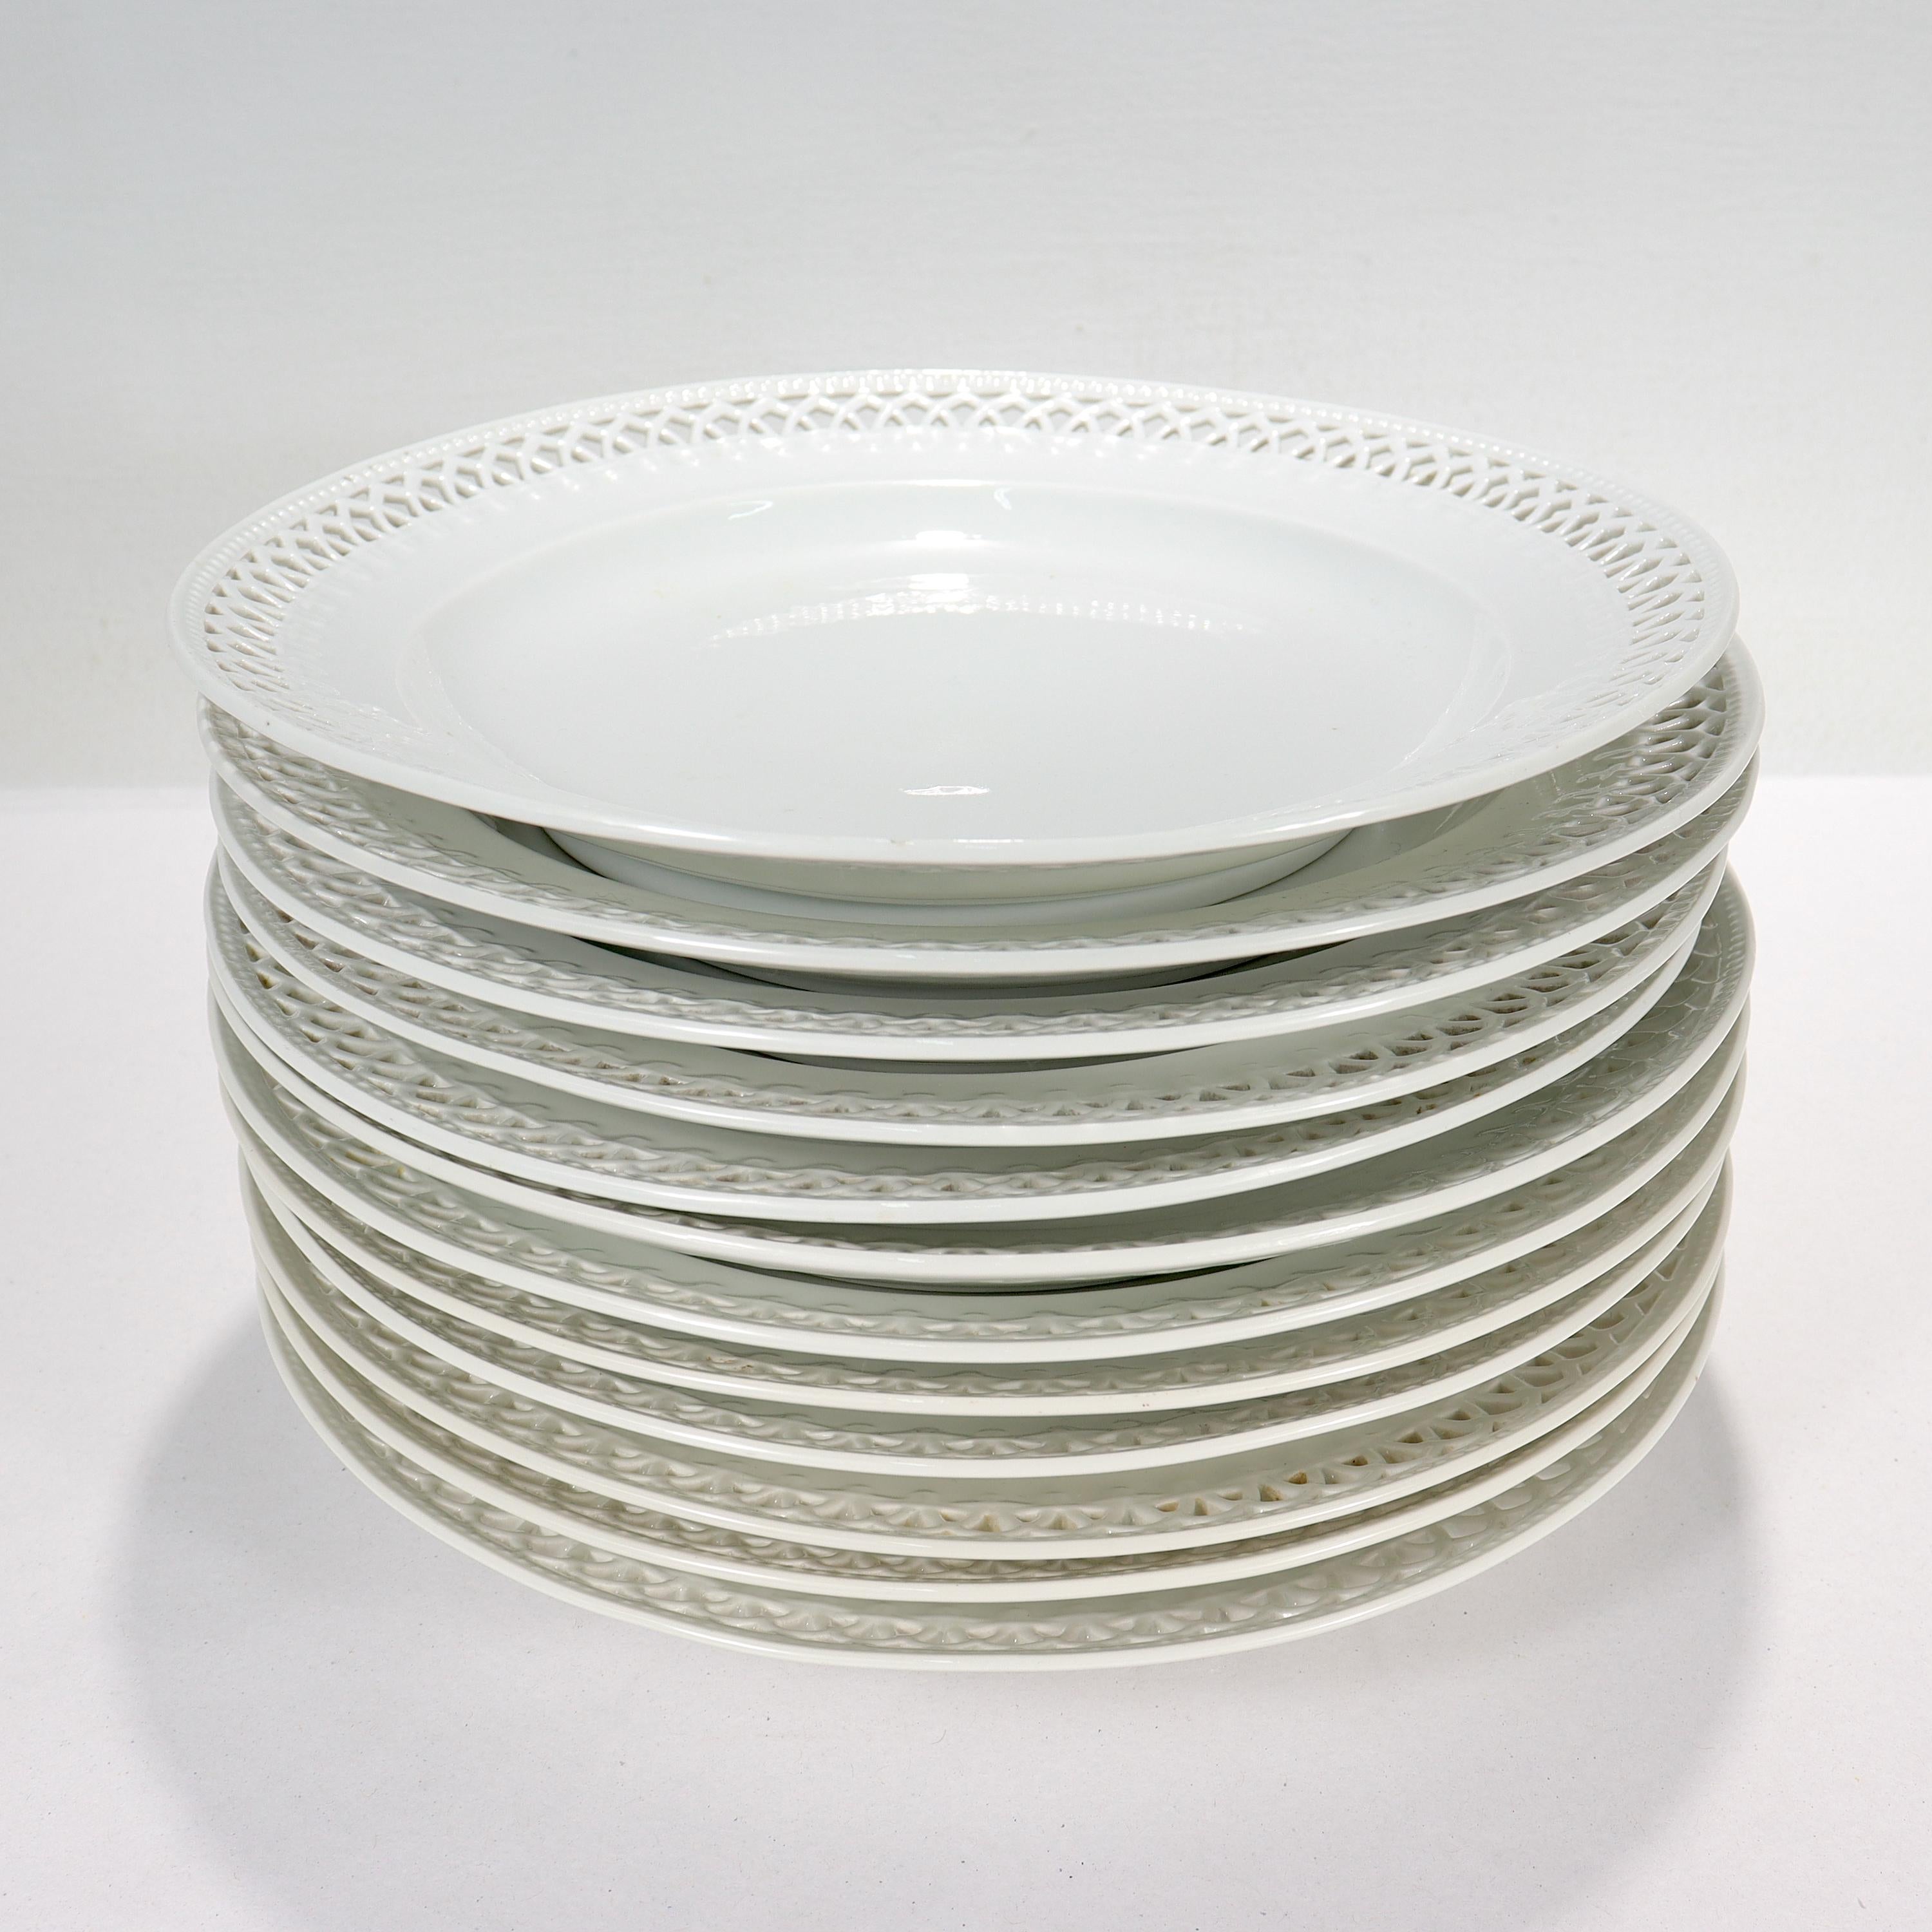 Jugendstil Set of 12 KPM Royal Berlin Reticulated Blanc de Chine Porcelain Dinner Plates